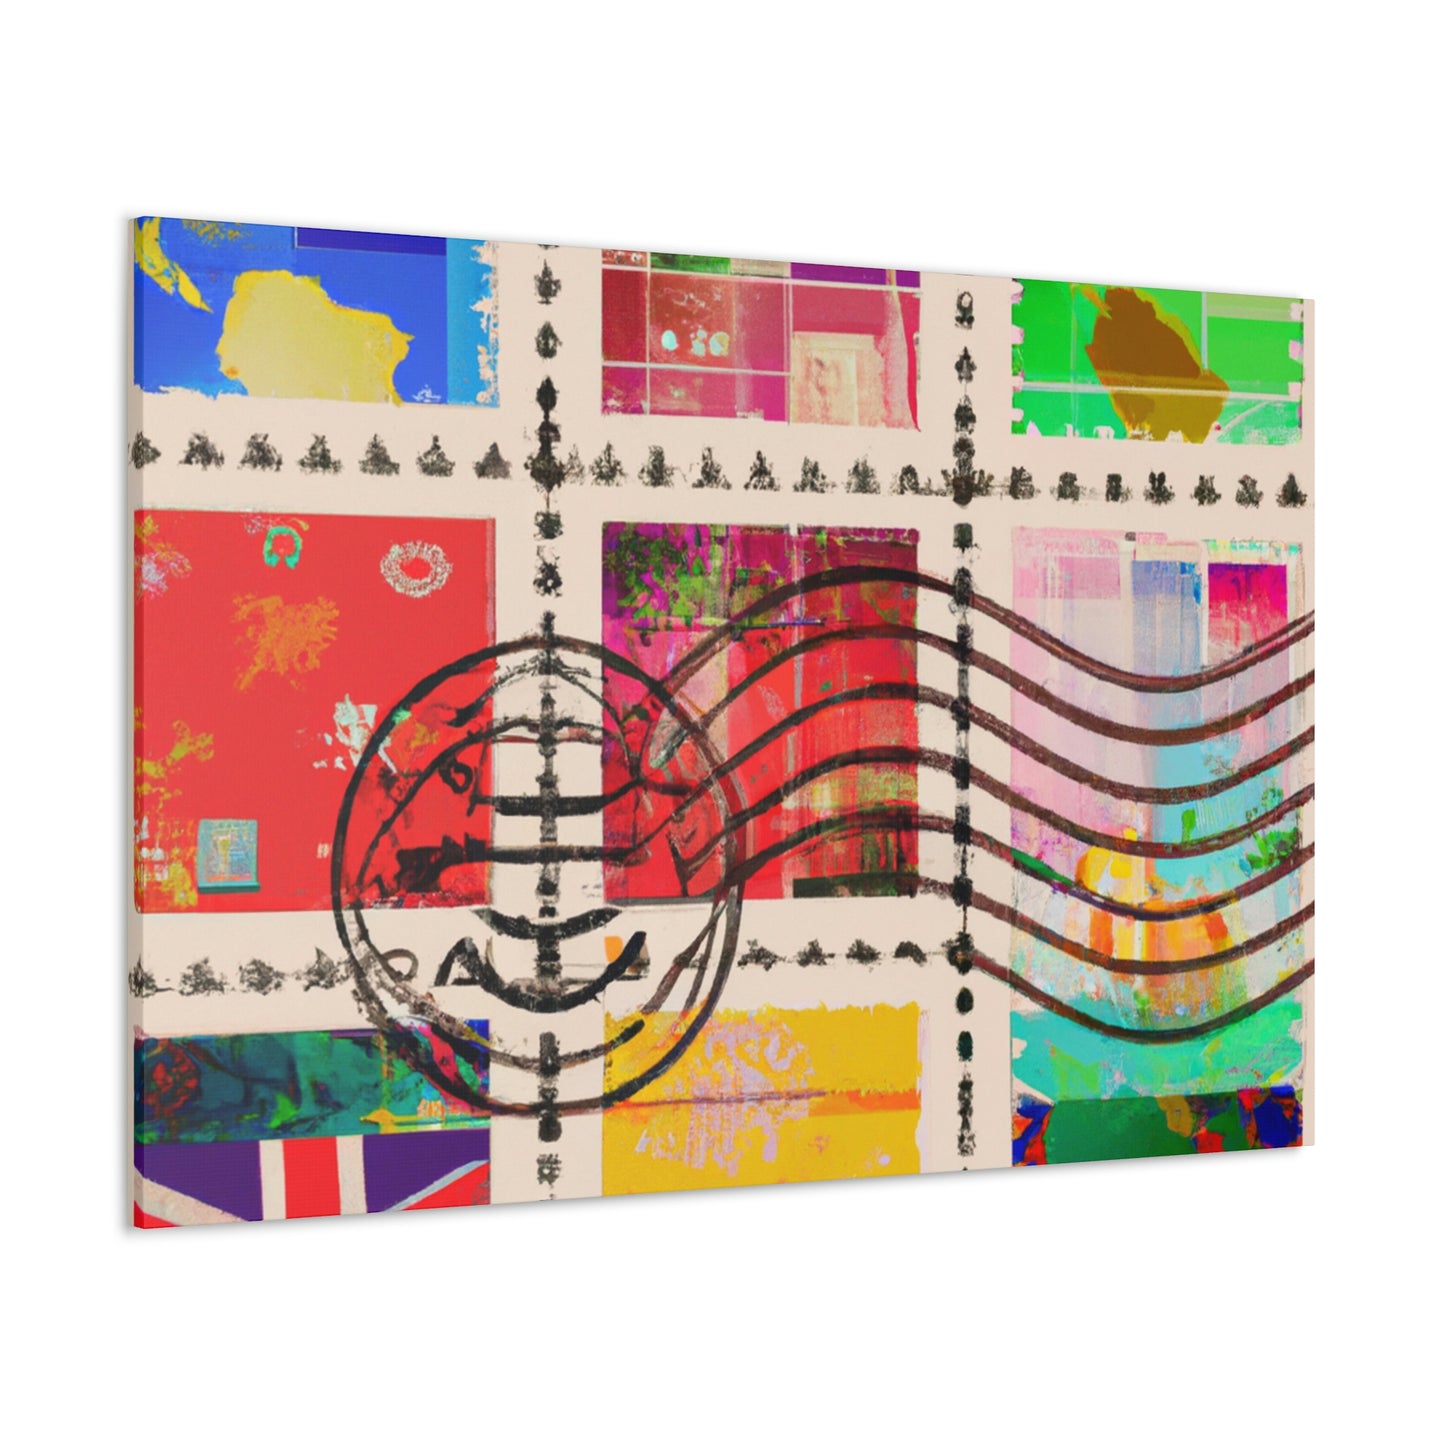 Global Greetings Stamp Series - Canvas